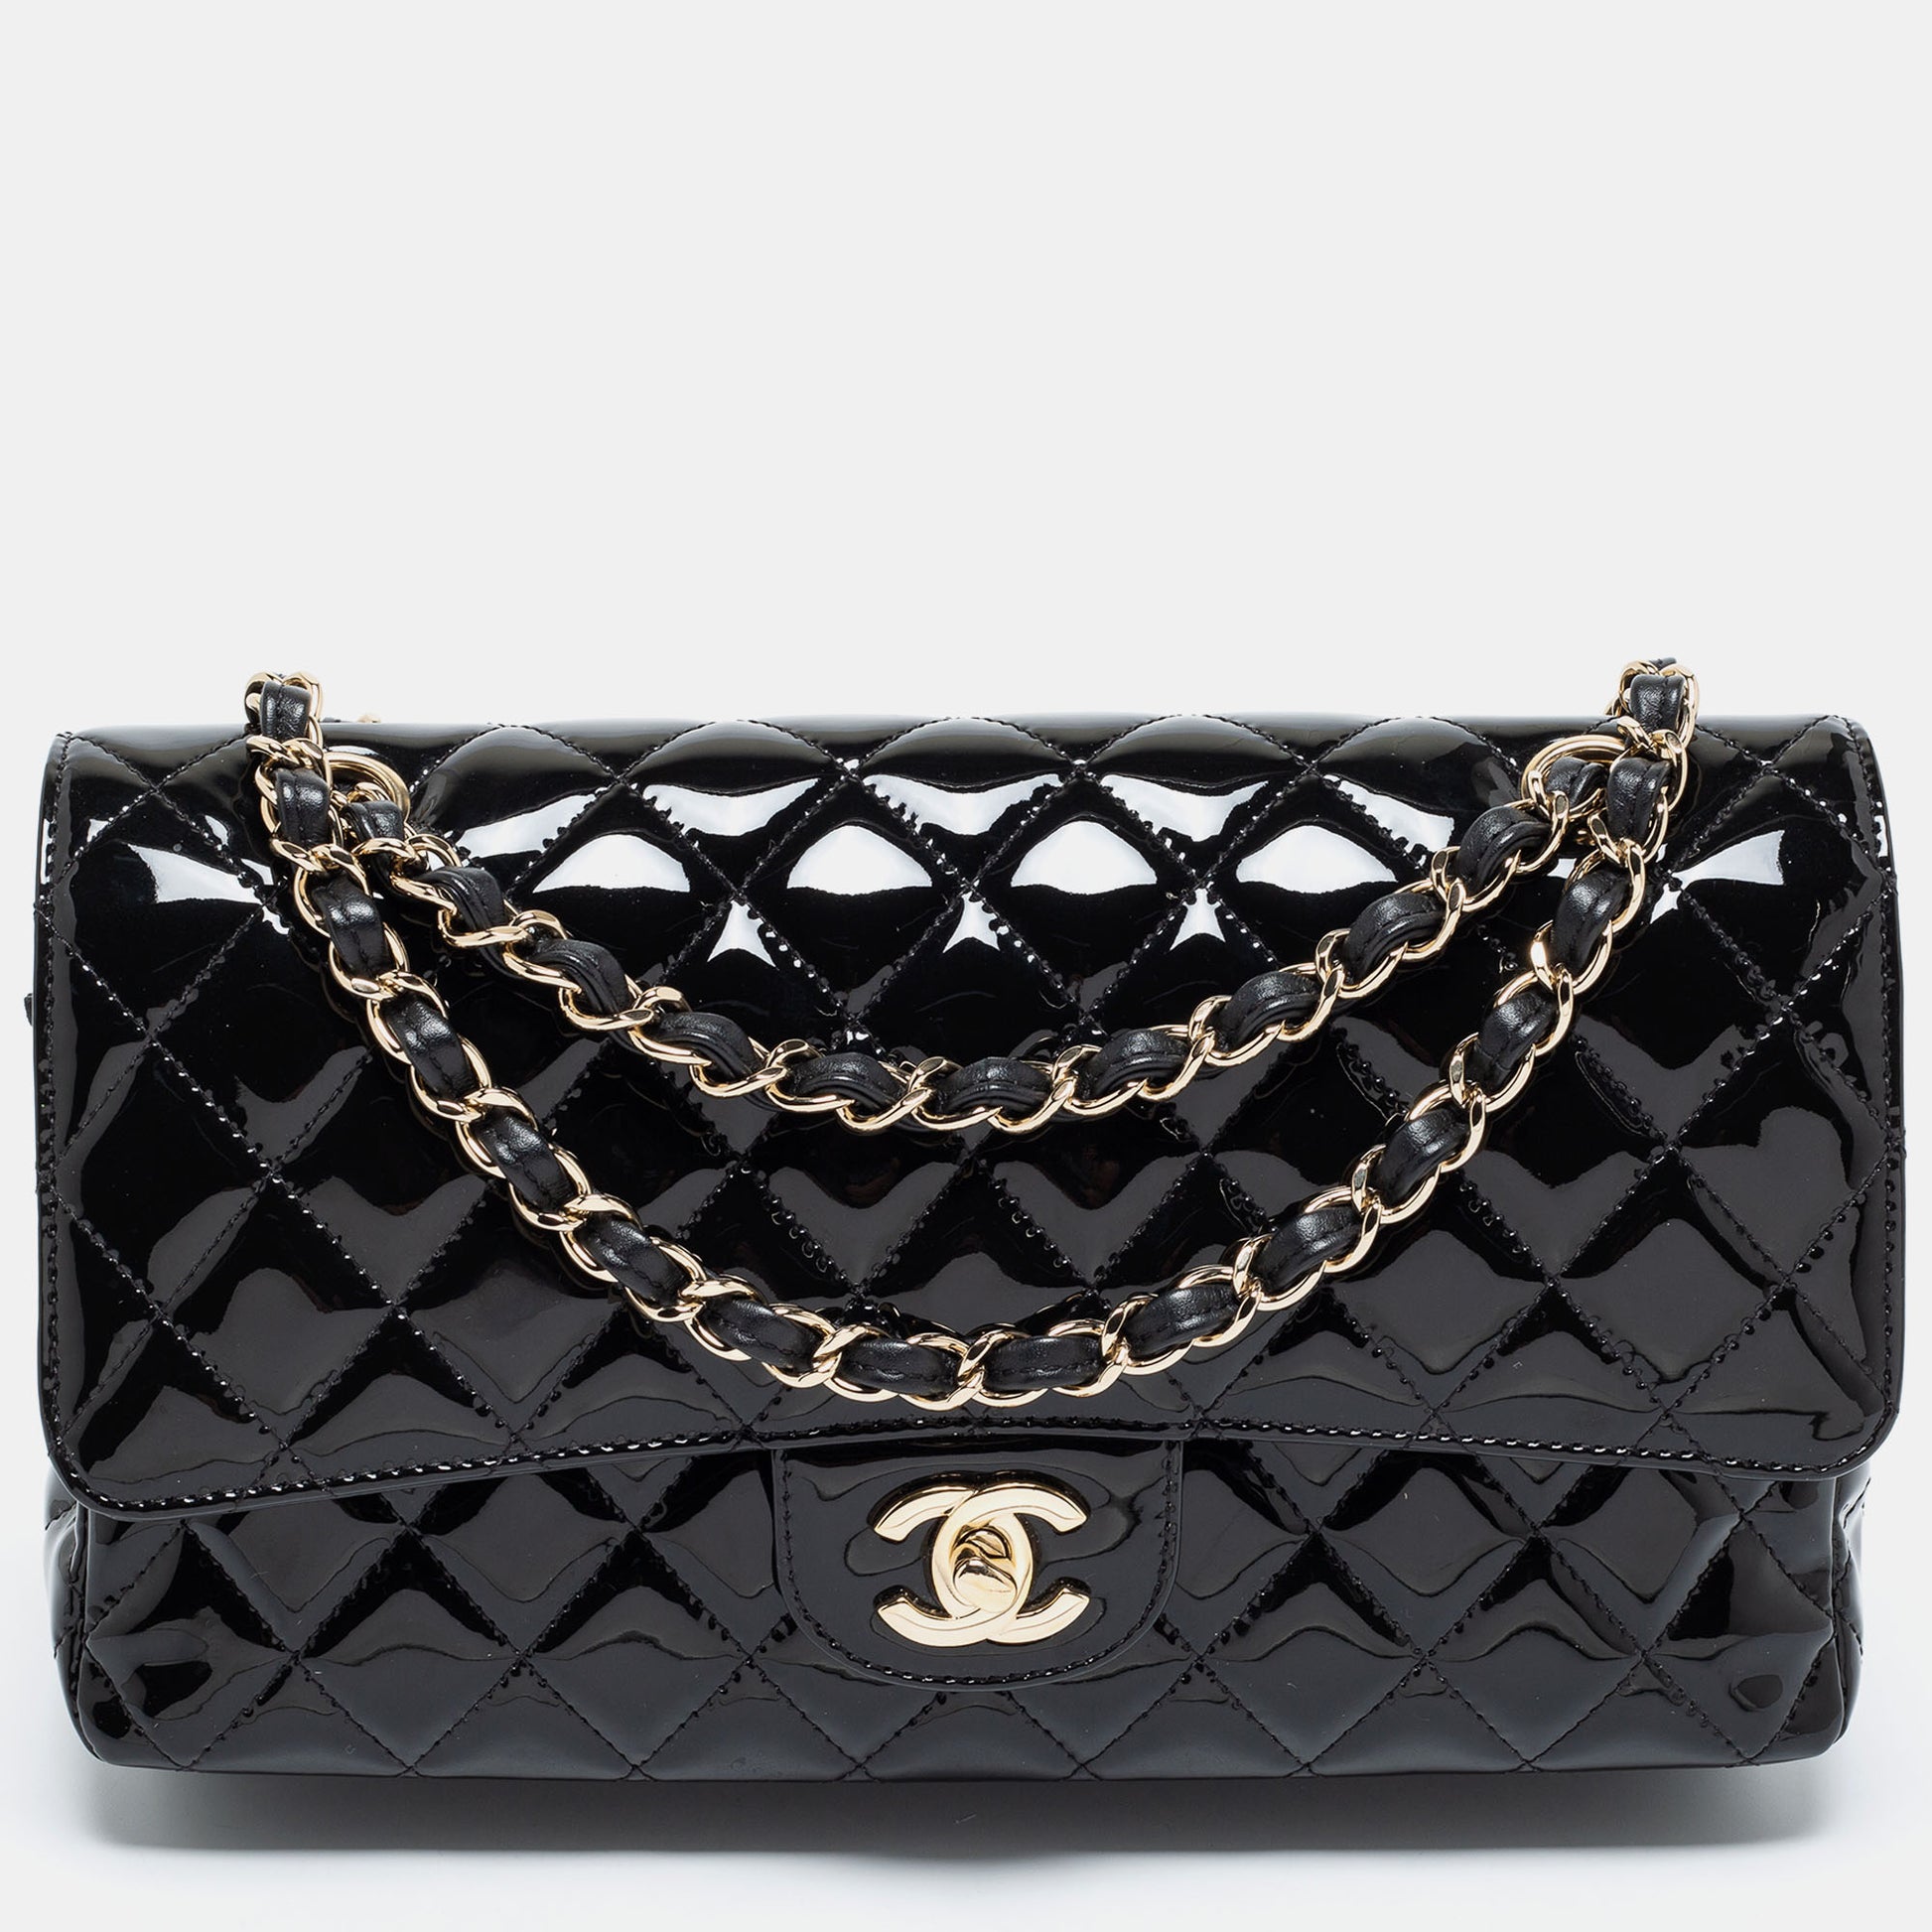 Chanel Chanel Black Quilted Leather 2.55 10 Shoulder Bag Gold